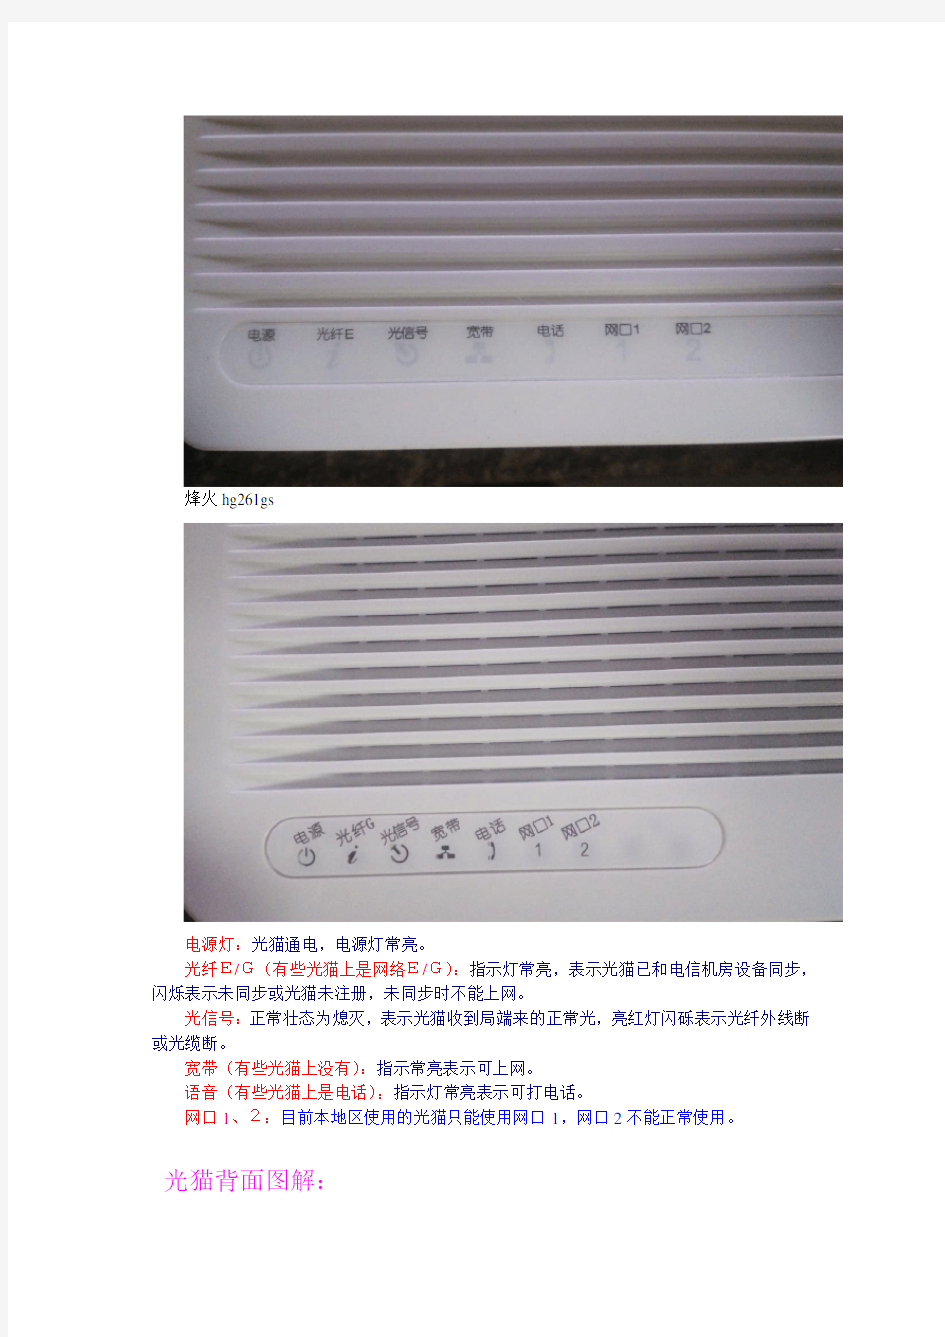 中国电信光纤宽带(障碍)用户自助处理手册-李祥呈